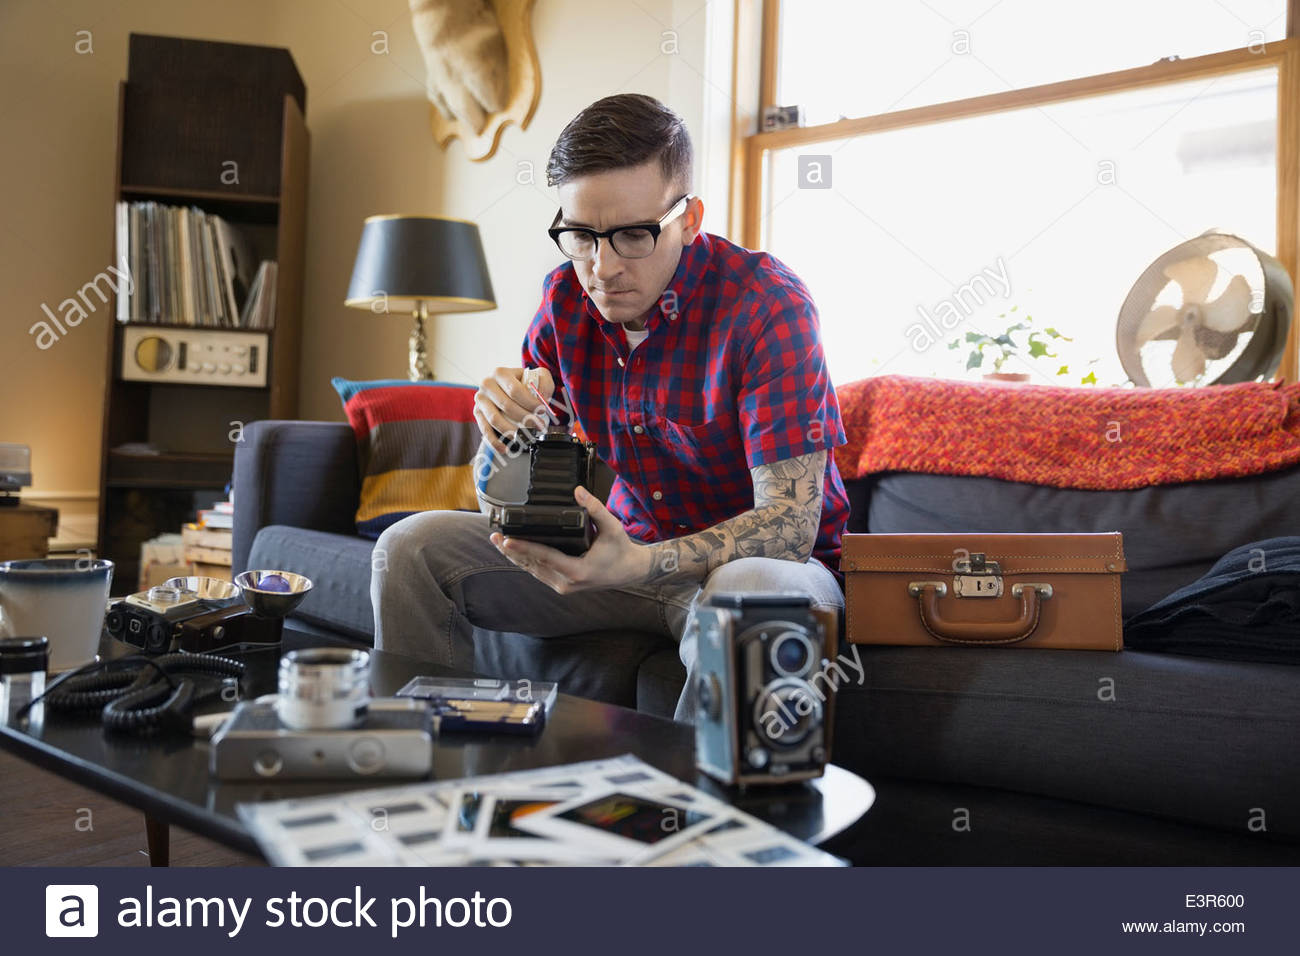 Man repairing antique camera in living room Stock Photo